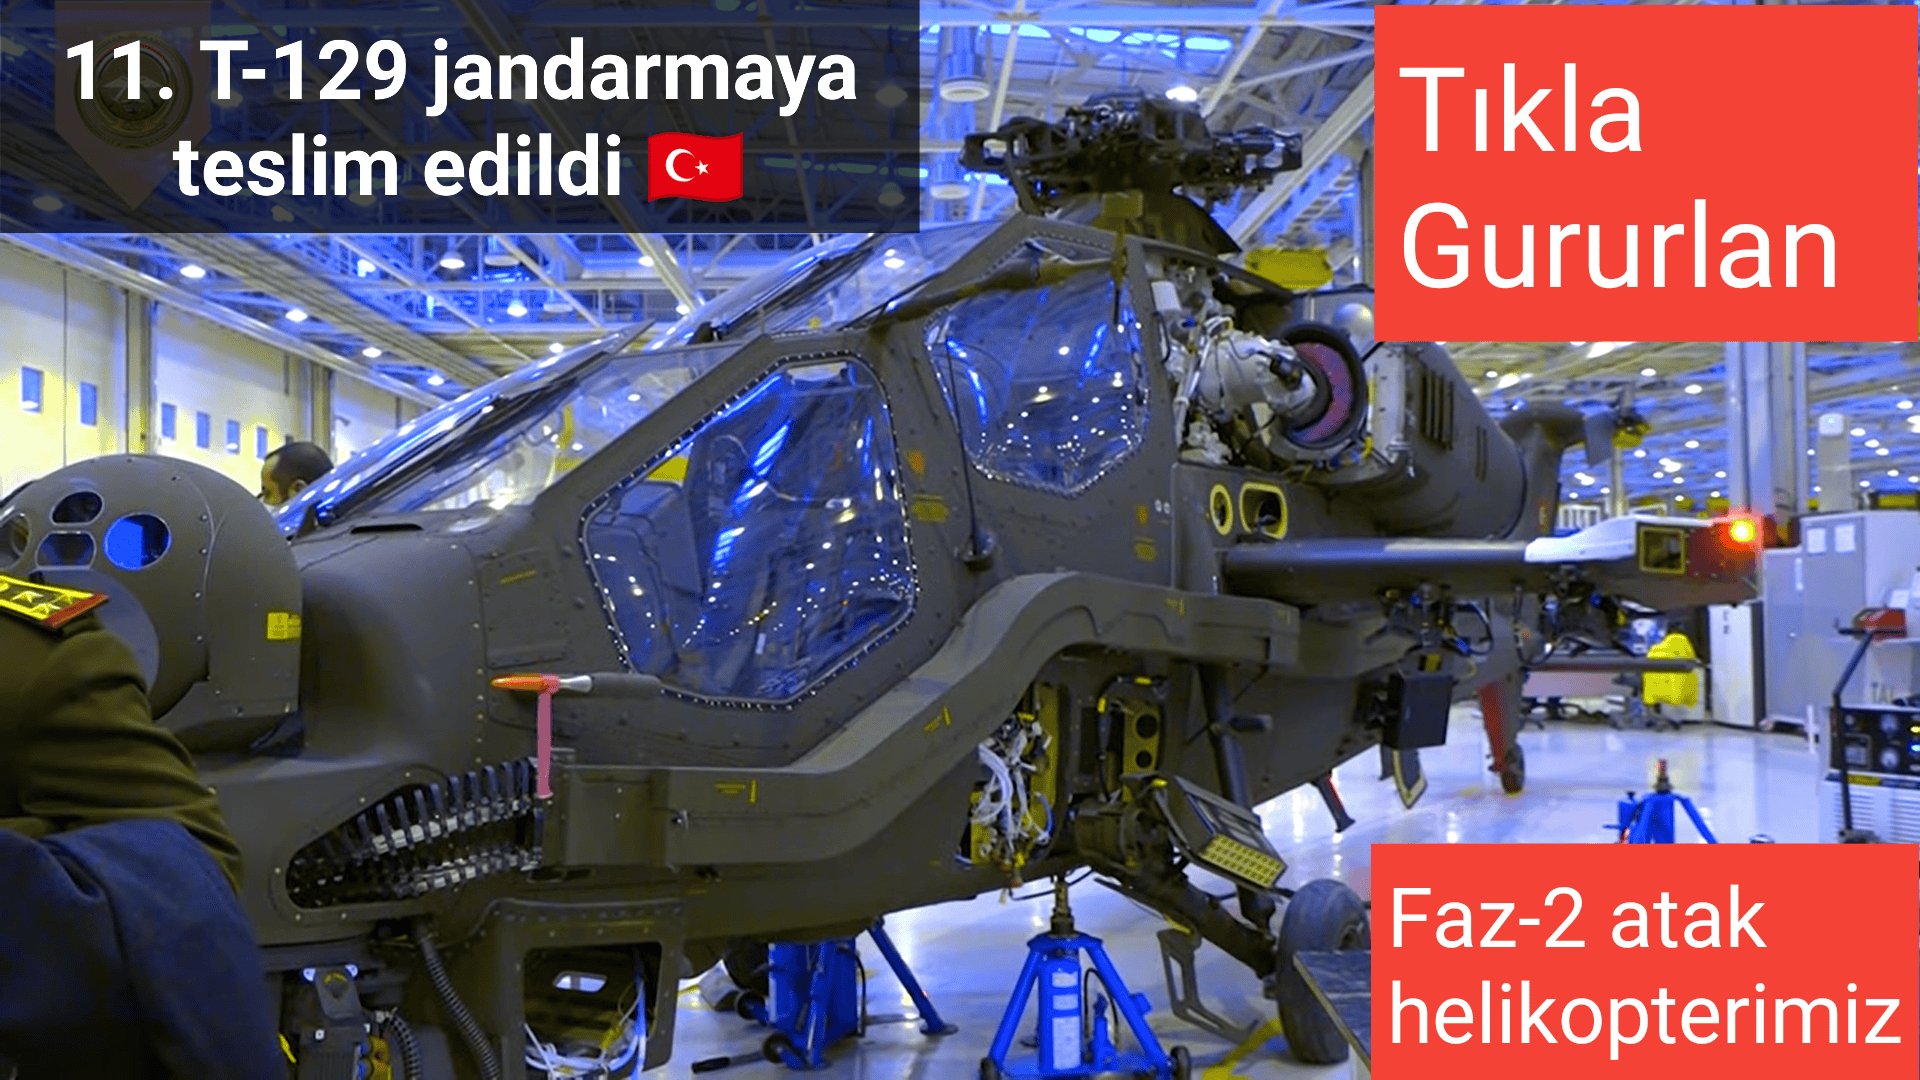 11. Atak t-129 helikopteri Jandarma Genel Komutanlığına teslim edildi